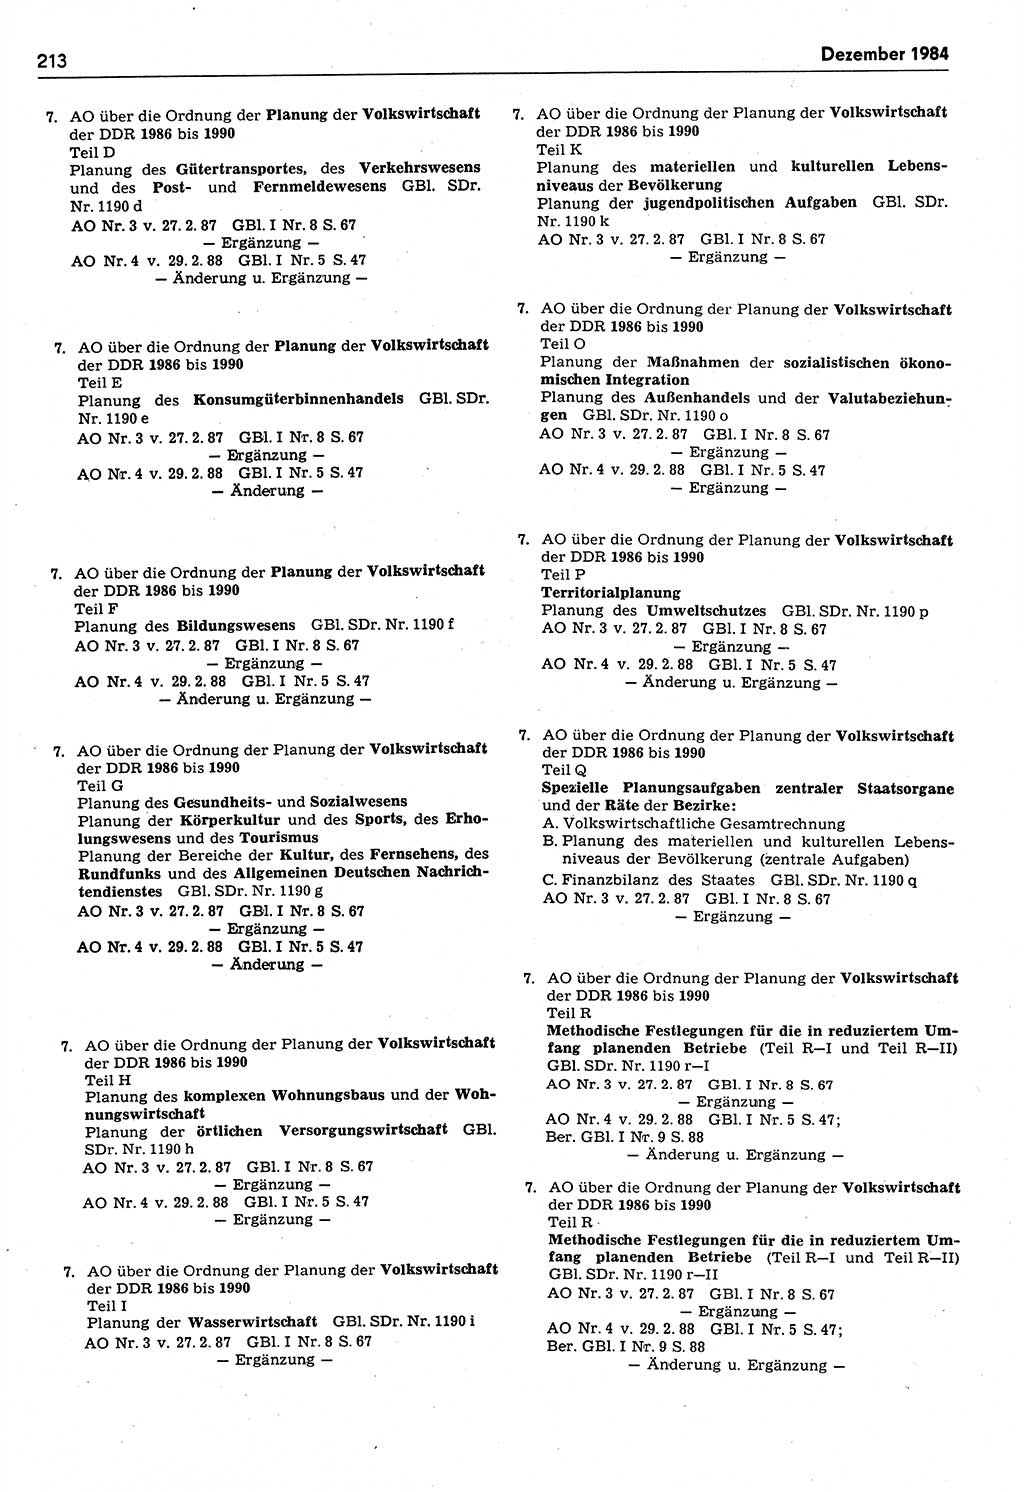 Das geltende Recht der Deutschen Demokratischen Republik (DDR) 1949-1988, Seite 213 (Gelt. R. DDR 1949-1988, S. 213)